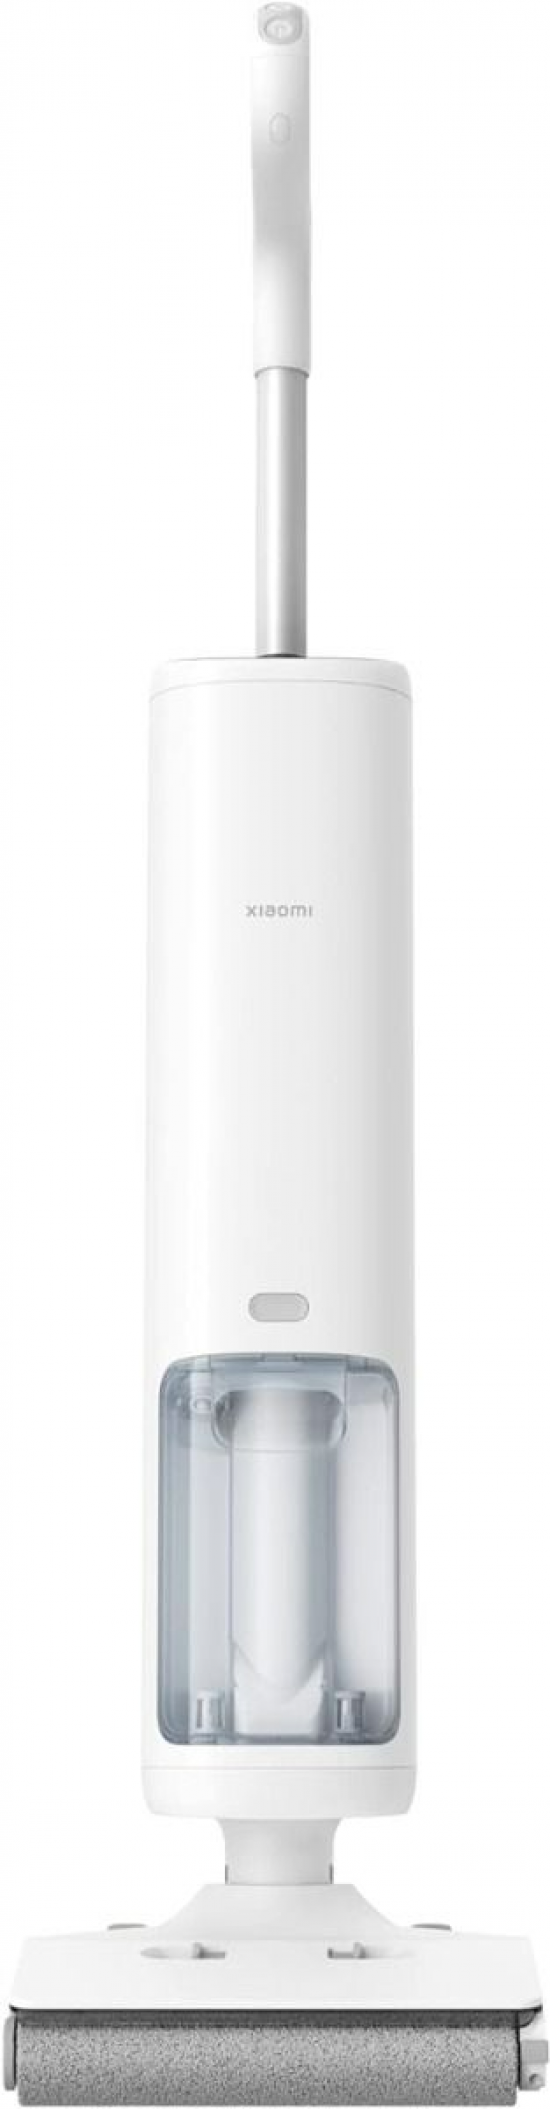 Անլար փոշեկուլ  Xiaomi Truclean W10 Pro Wet Dry Vacuum (B302GL)  BHR6278EU - 26861